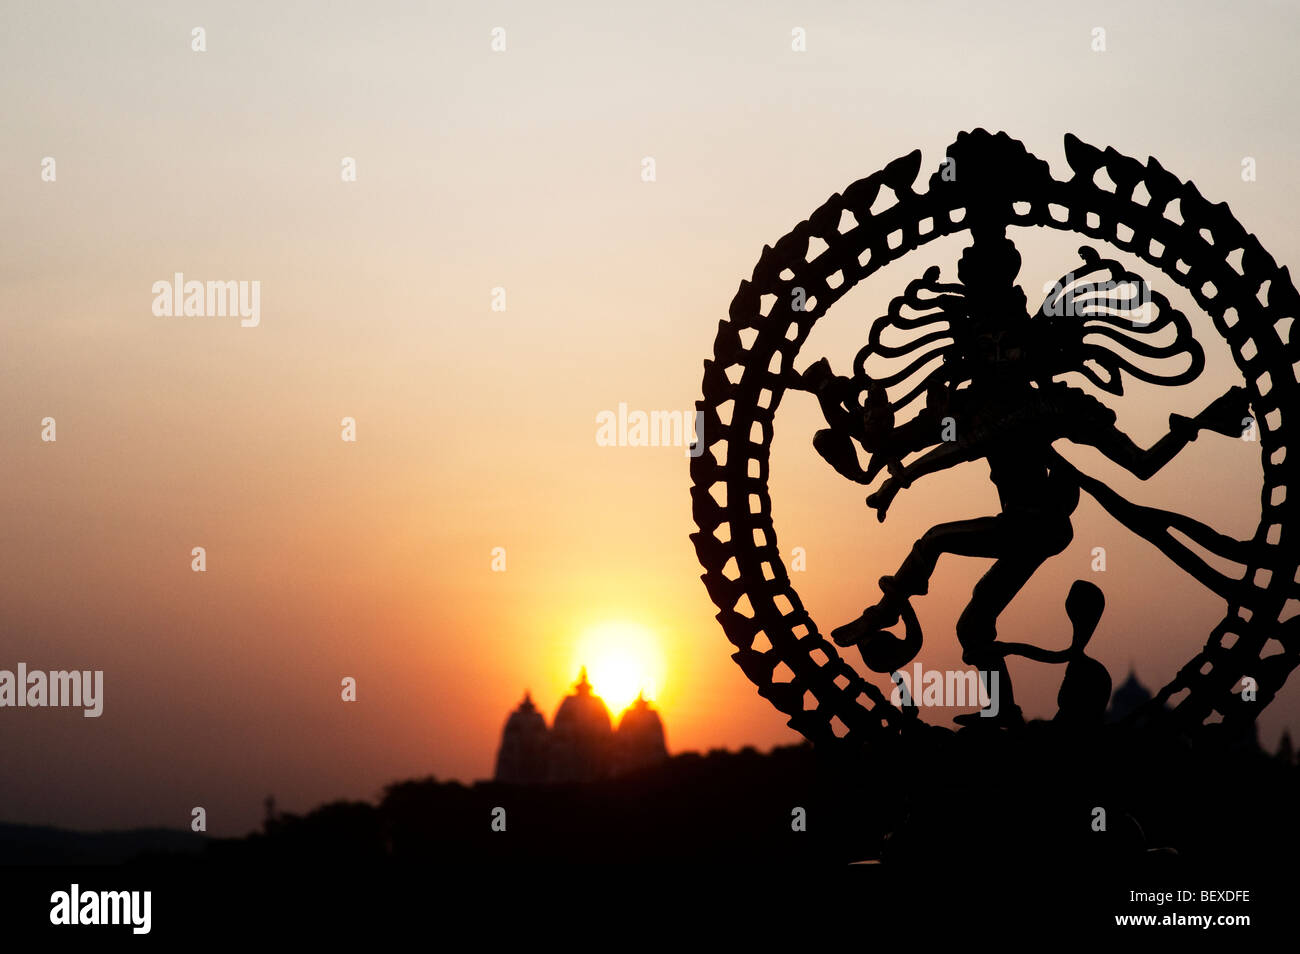 Lord Shiva Statue, Nataraja Silhouette vor einem indischen Tempel Sonnenaufgang Hintergrund tanzen. Indien Stockfoto